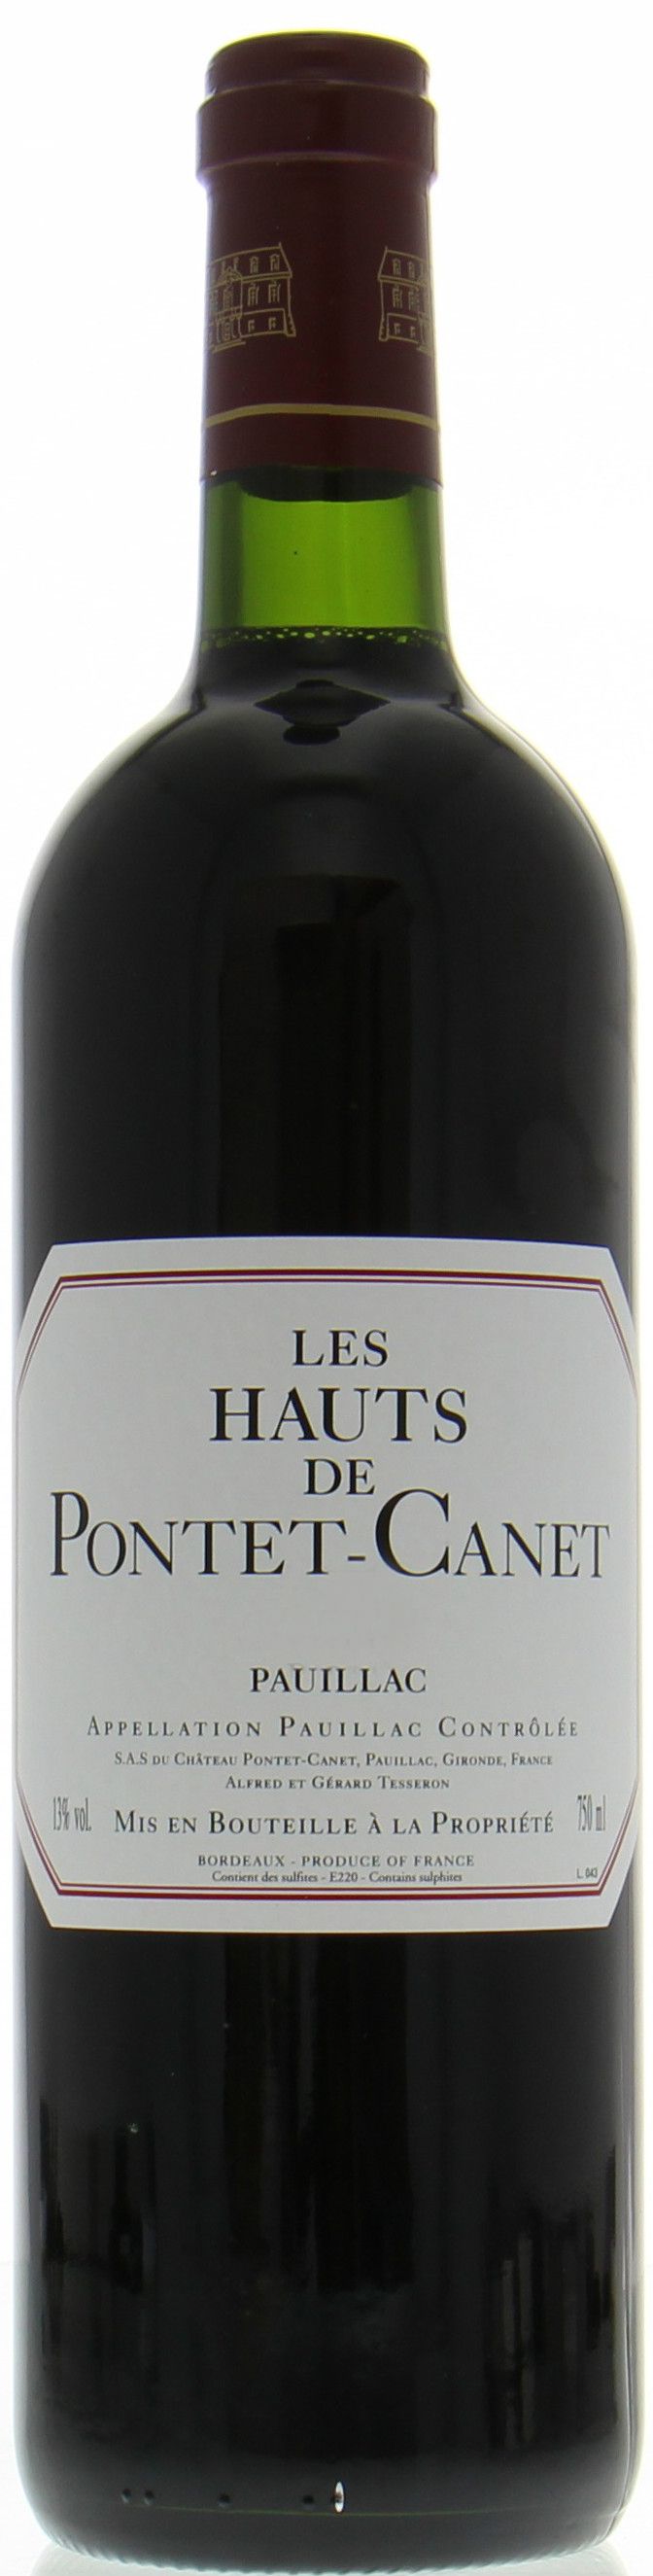 Le Hauts De Pontet-Canet, 2003